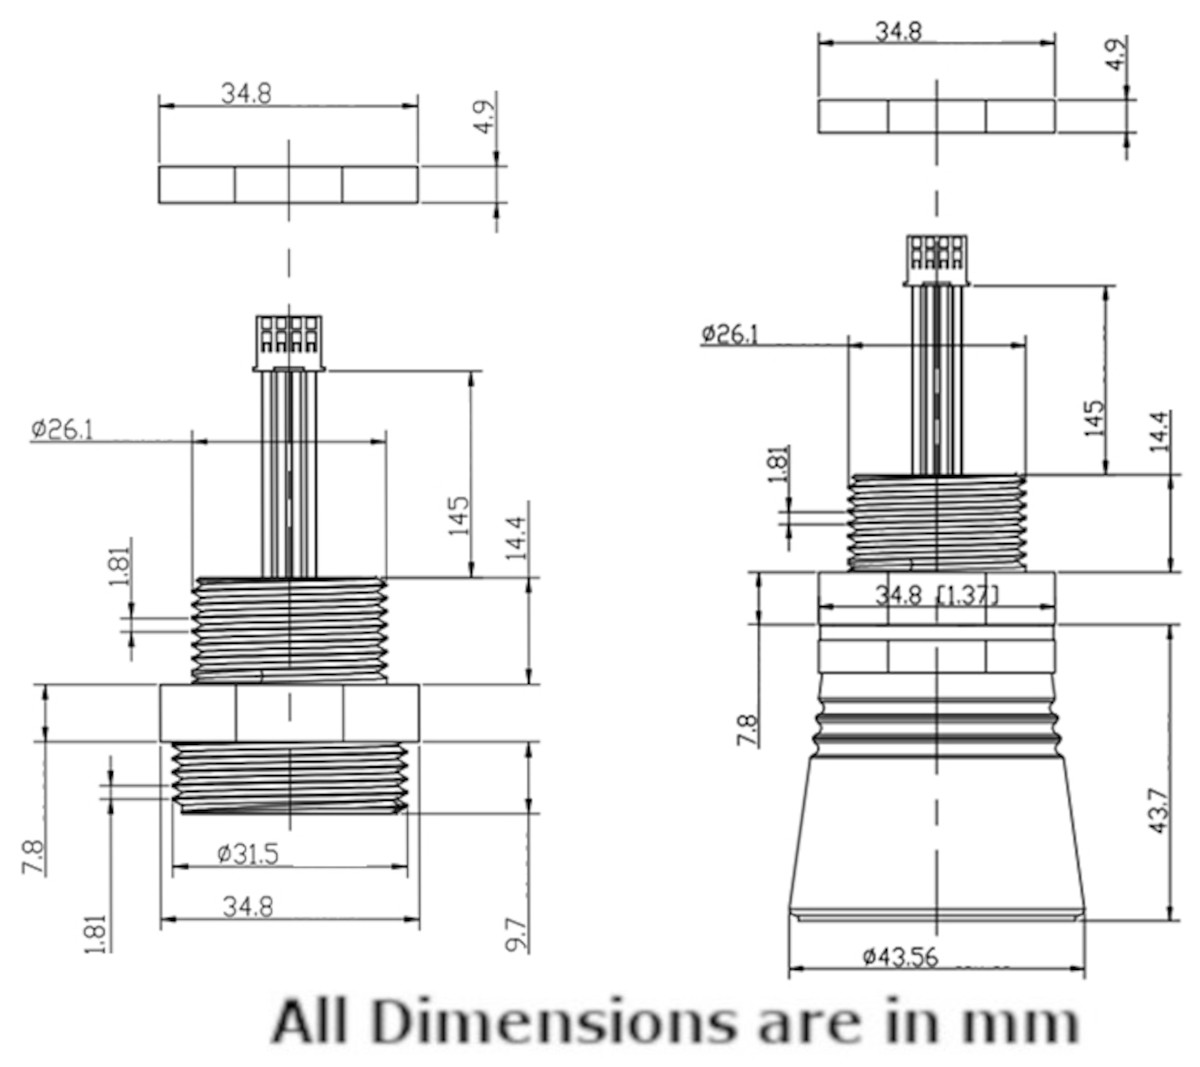 PB-A08 Ultrasonic Level Sensor Dimensions